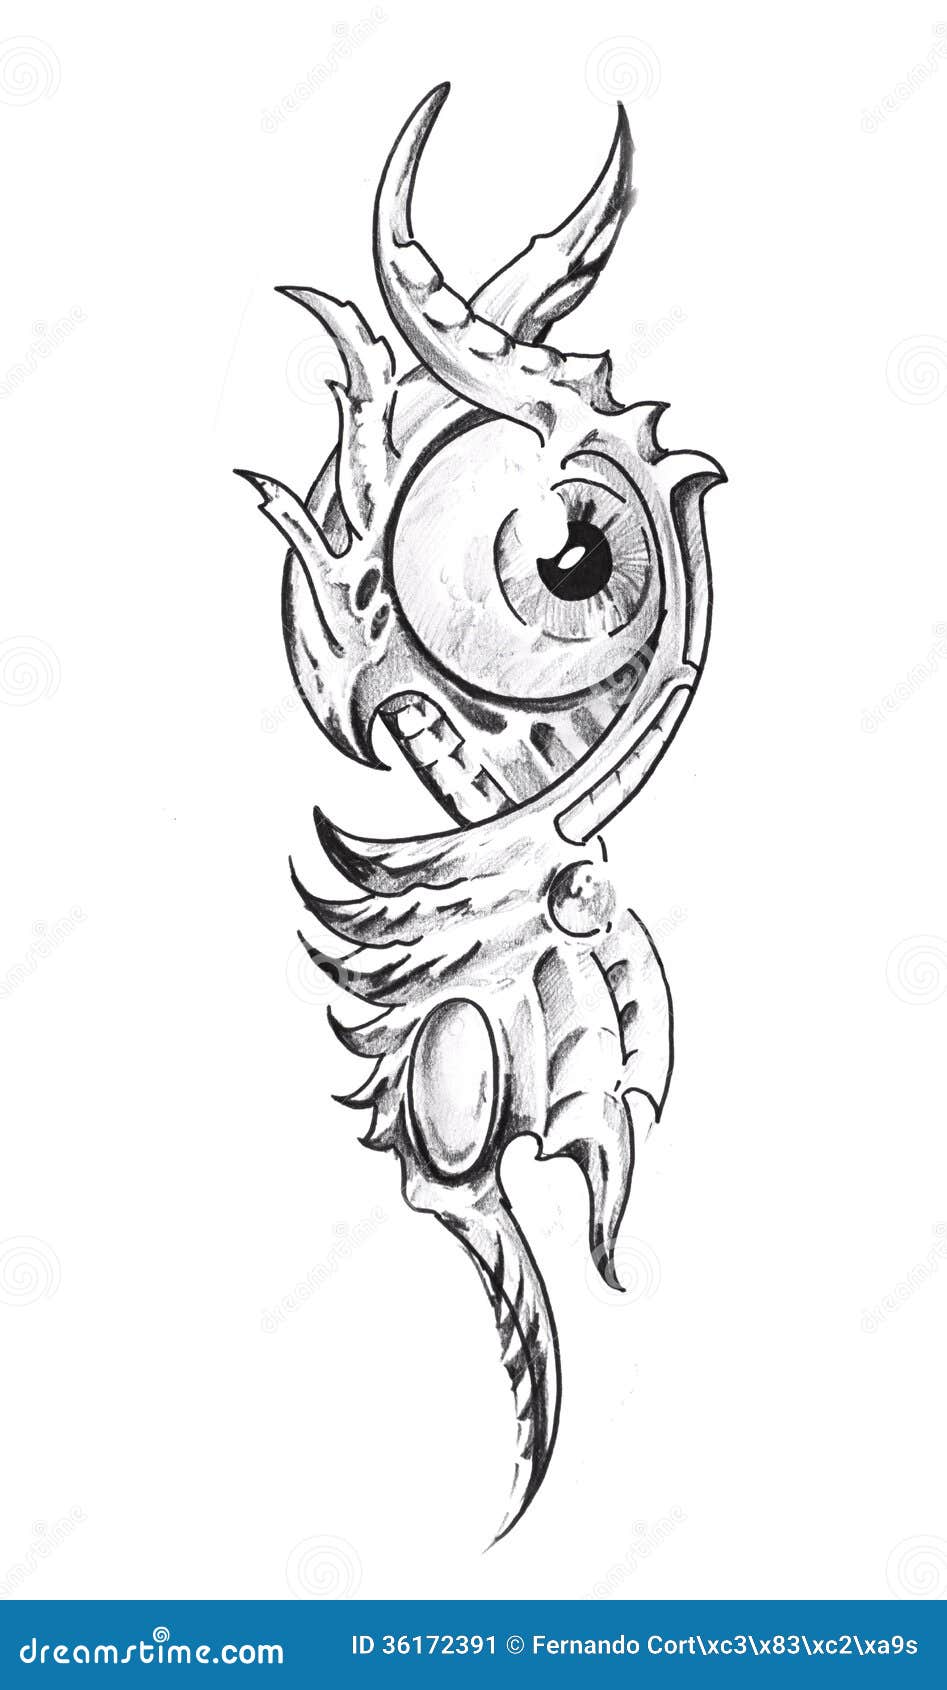 Clockeye tattoo design by NathanBrittain on DeviantArt